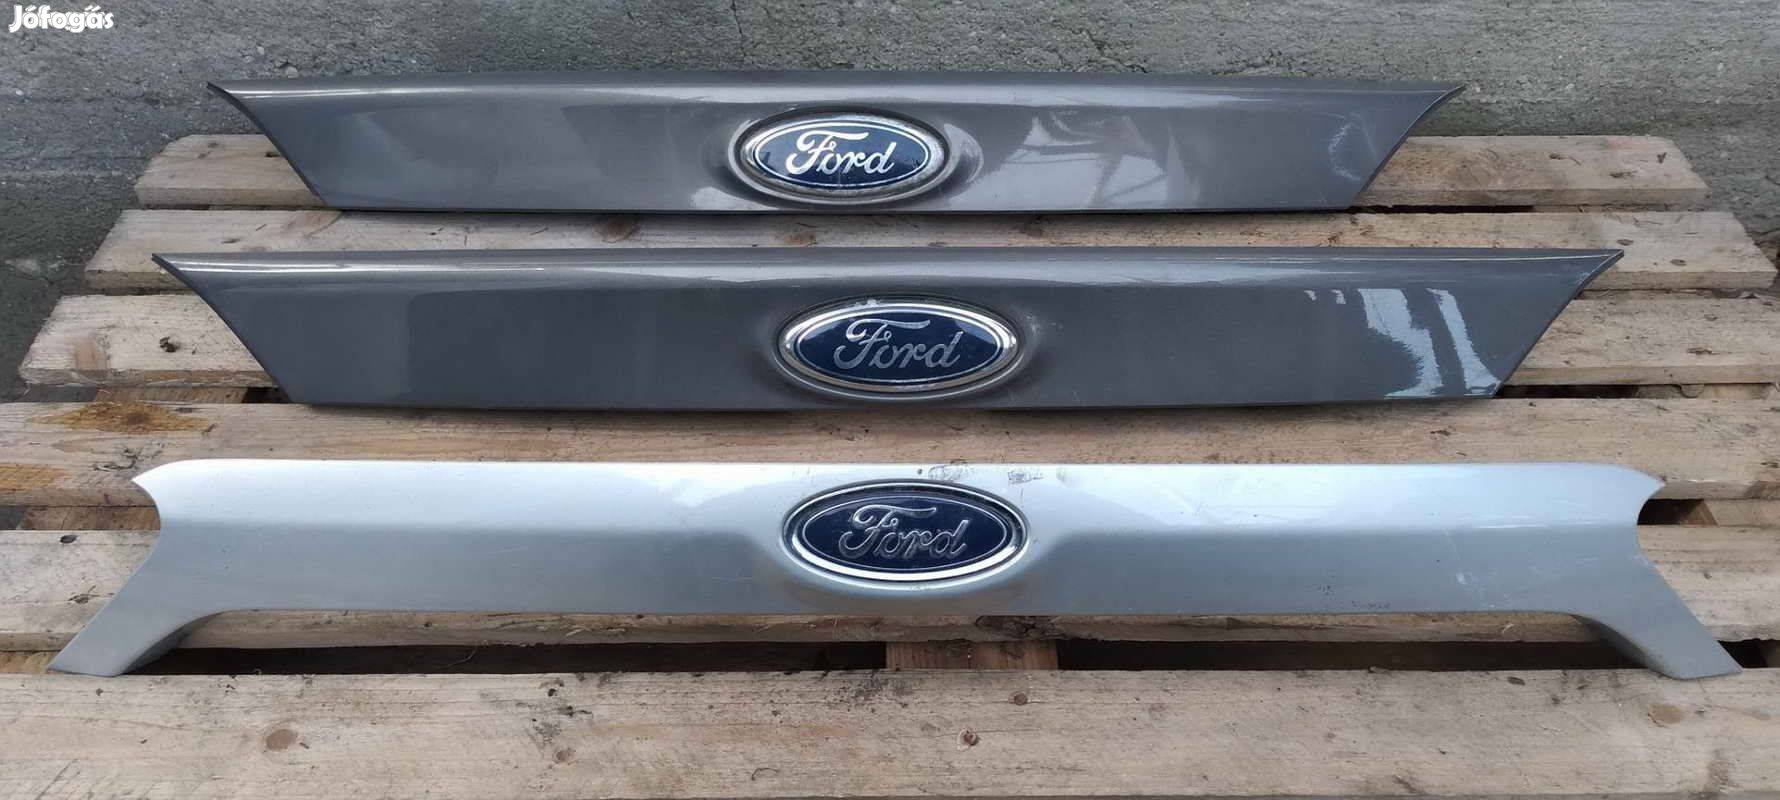 Eladó Ford Focus MK3 csomagtér ajtó borítás 2011 től fogantyú